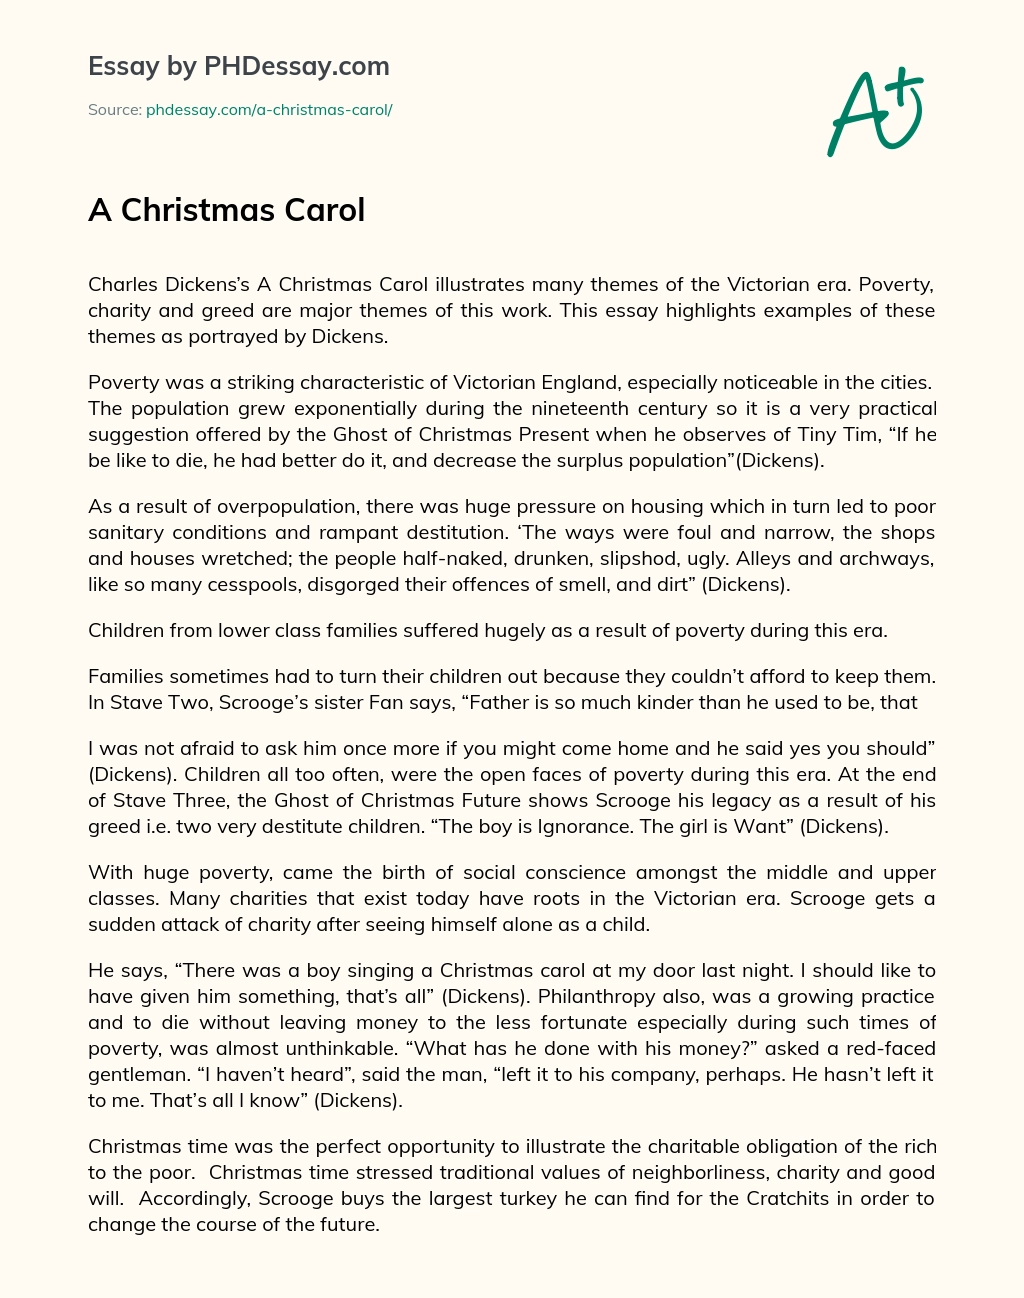 A Christmas Carol essay